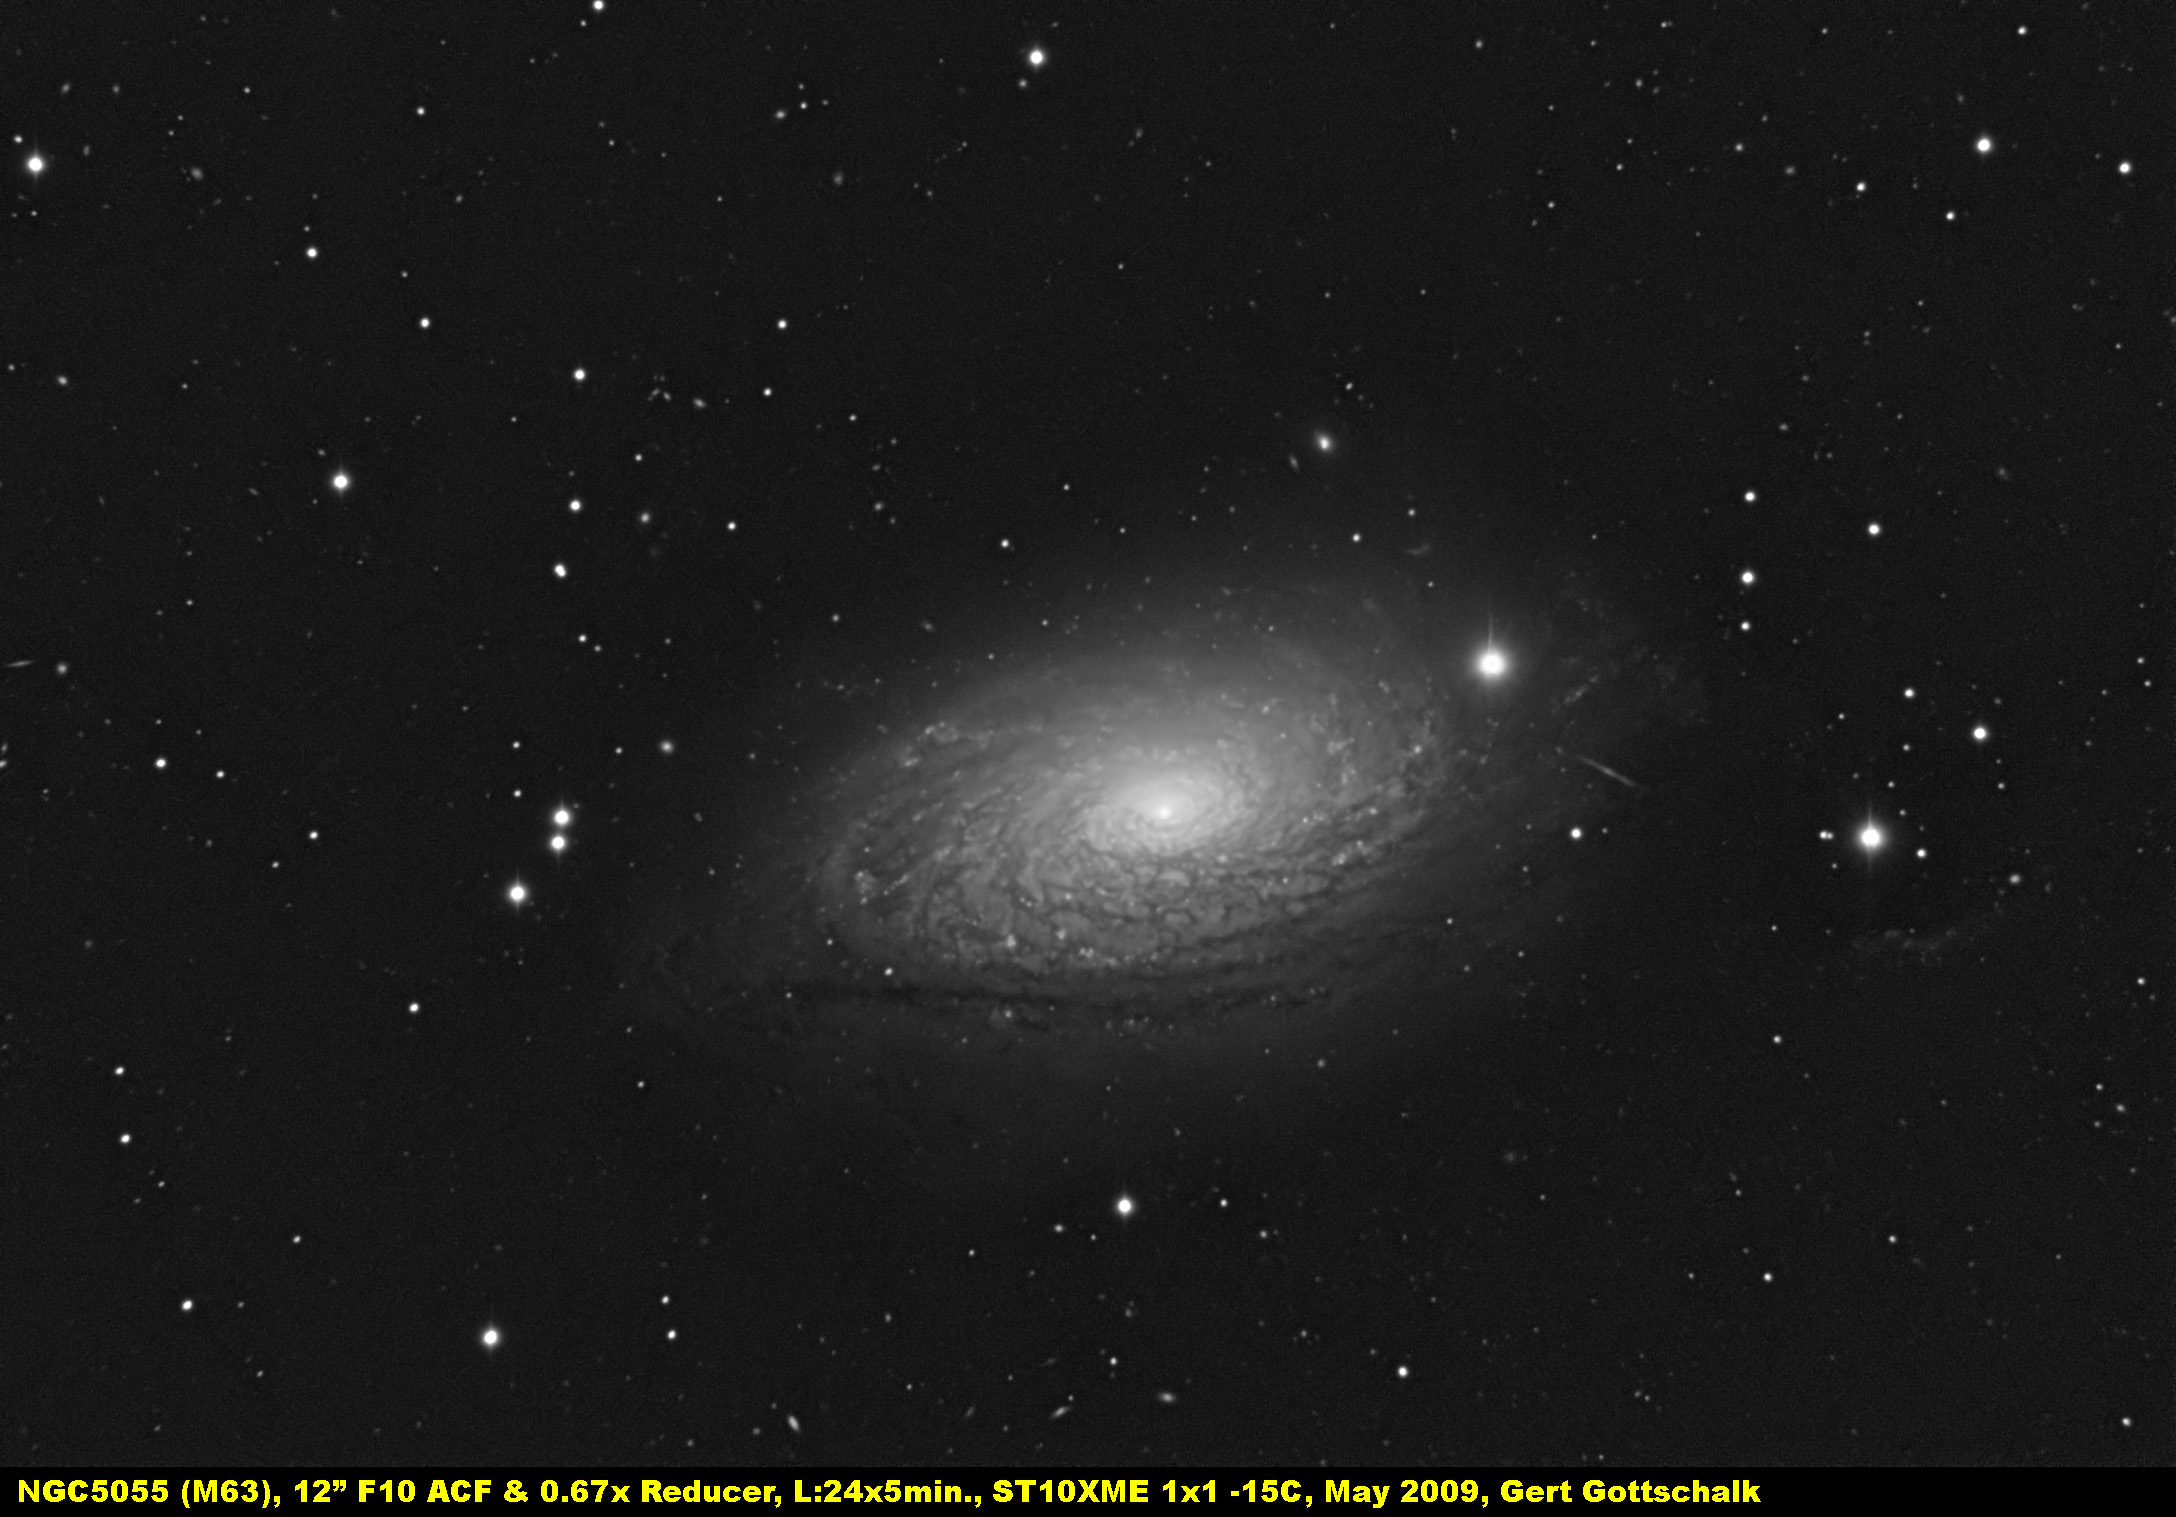 Image NGC 5055